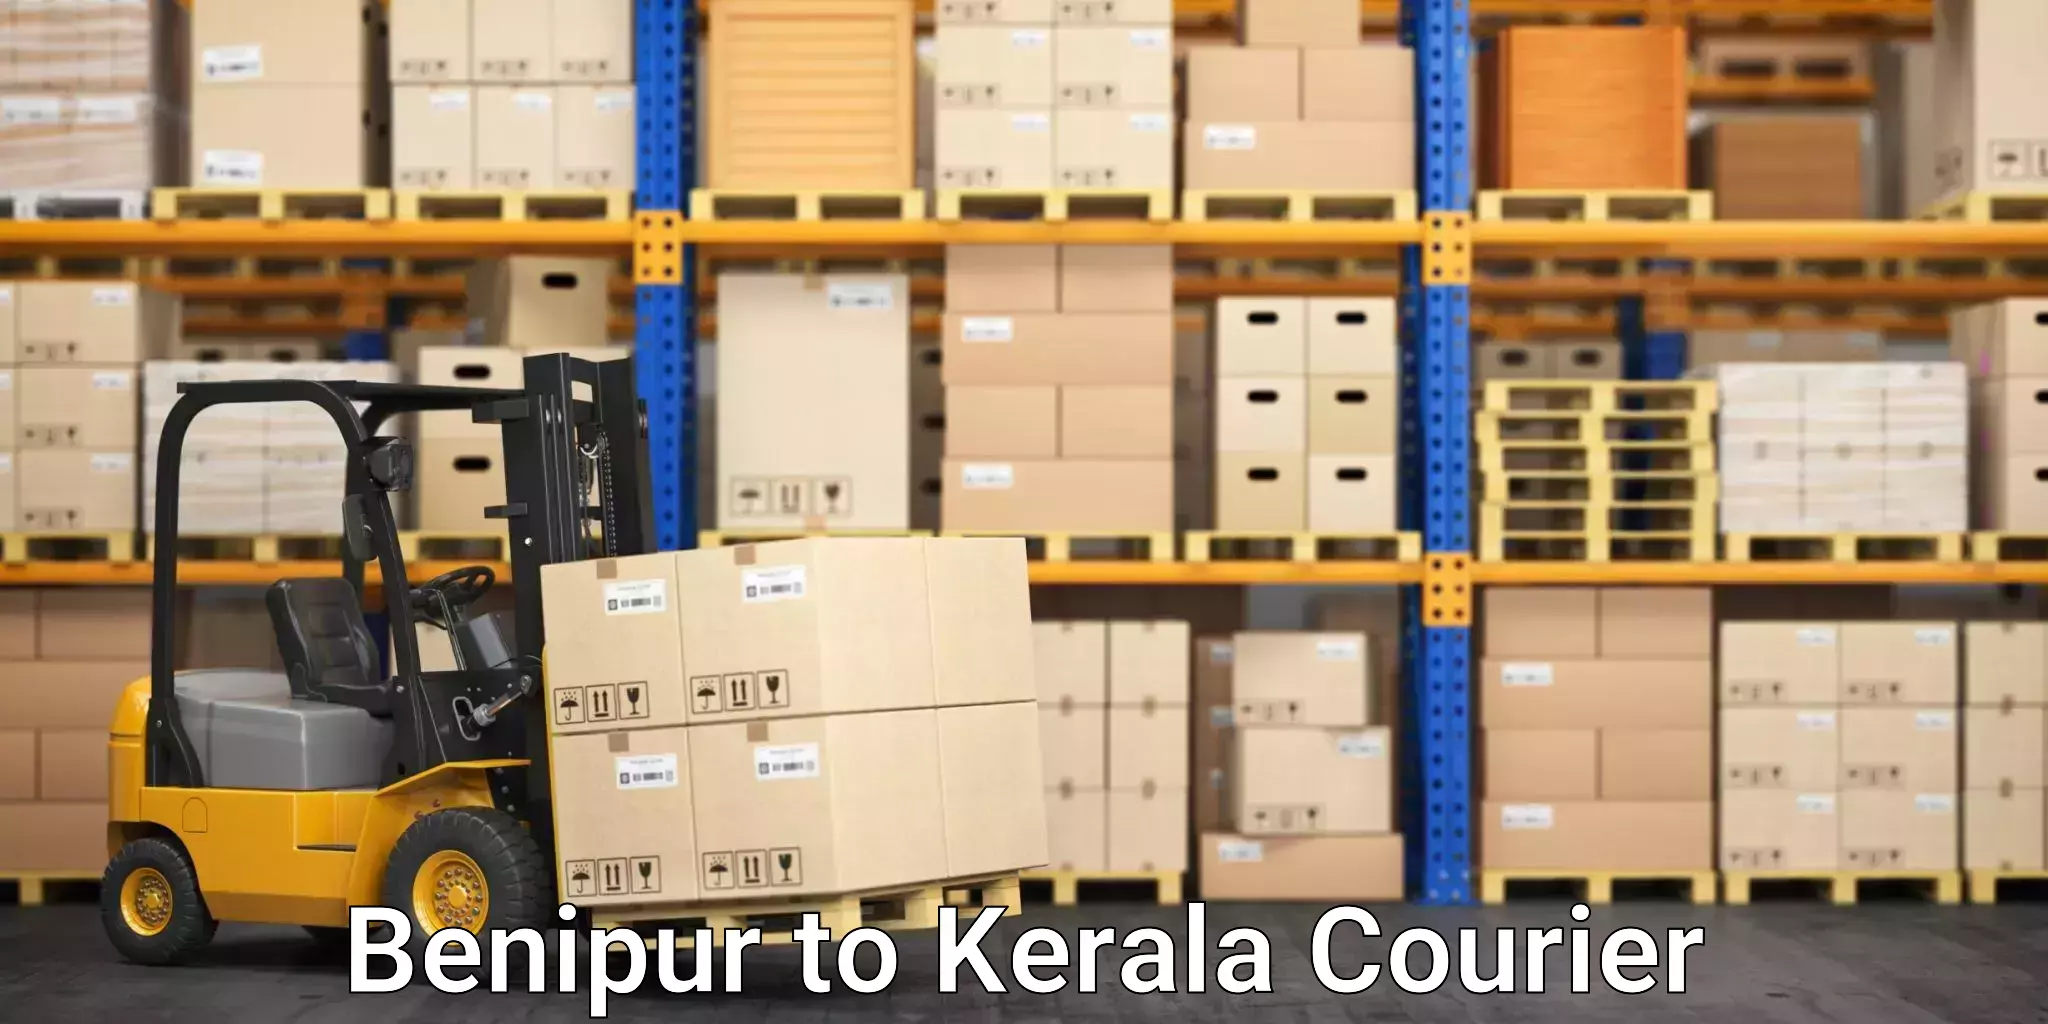 Stress-free furniture moving Benipur to Kochi